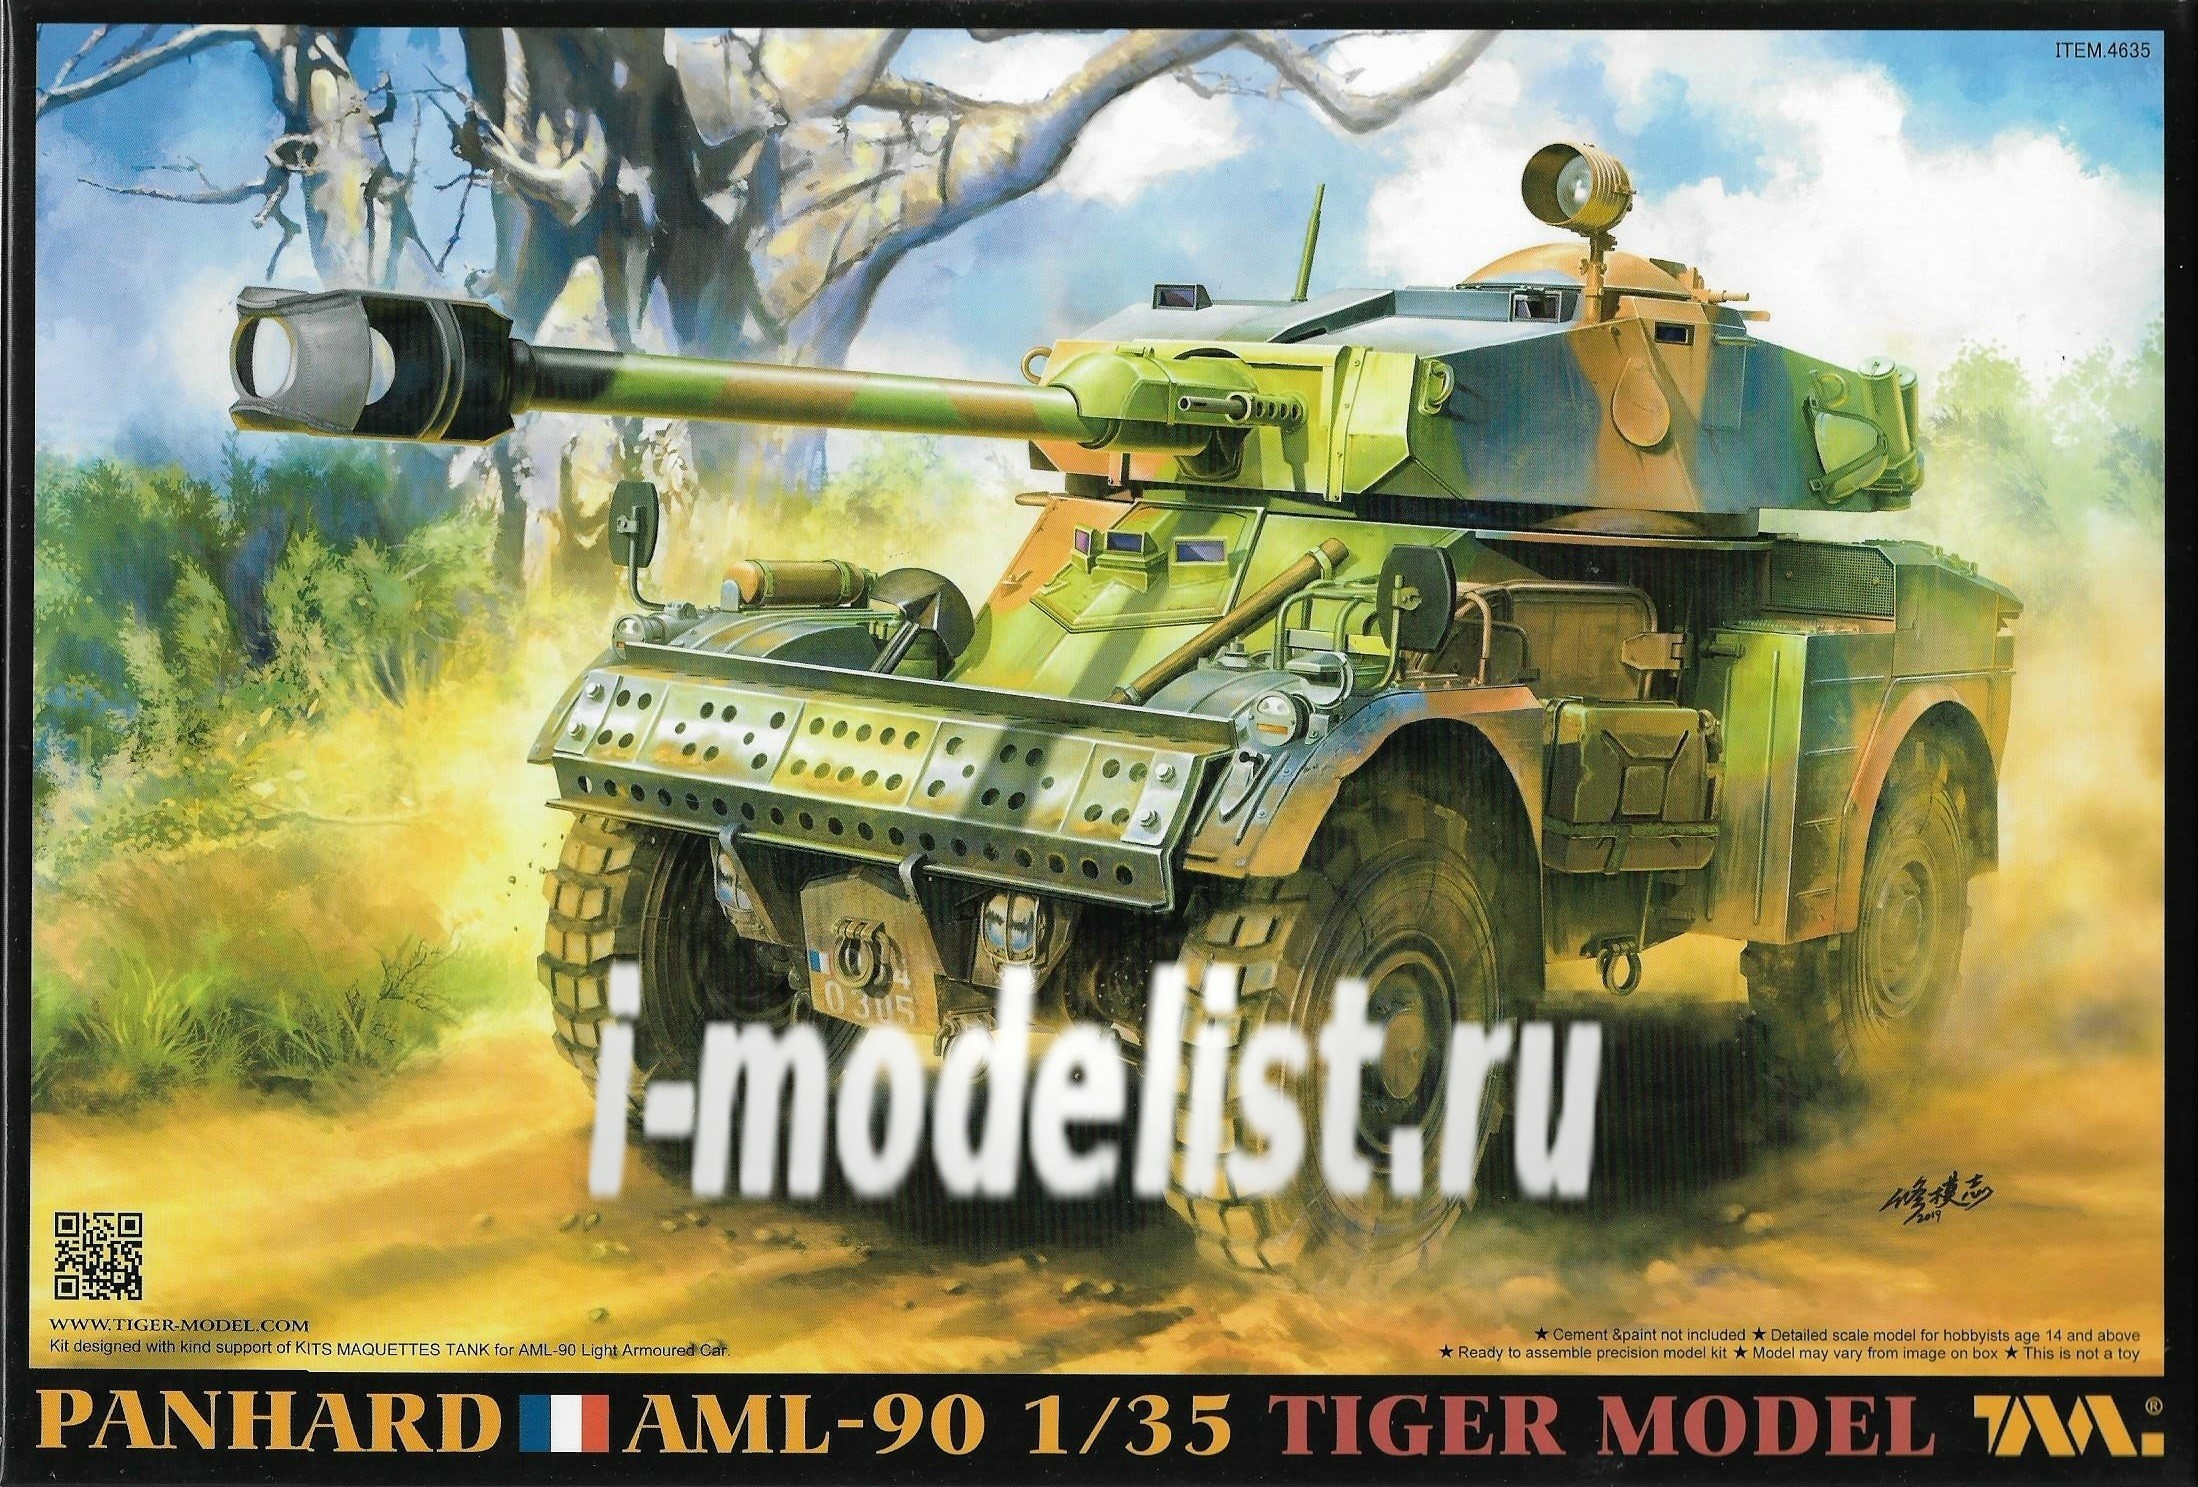 4635 Tiger Models 1/35 PANHARD AML-90